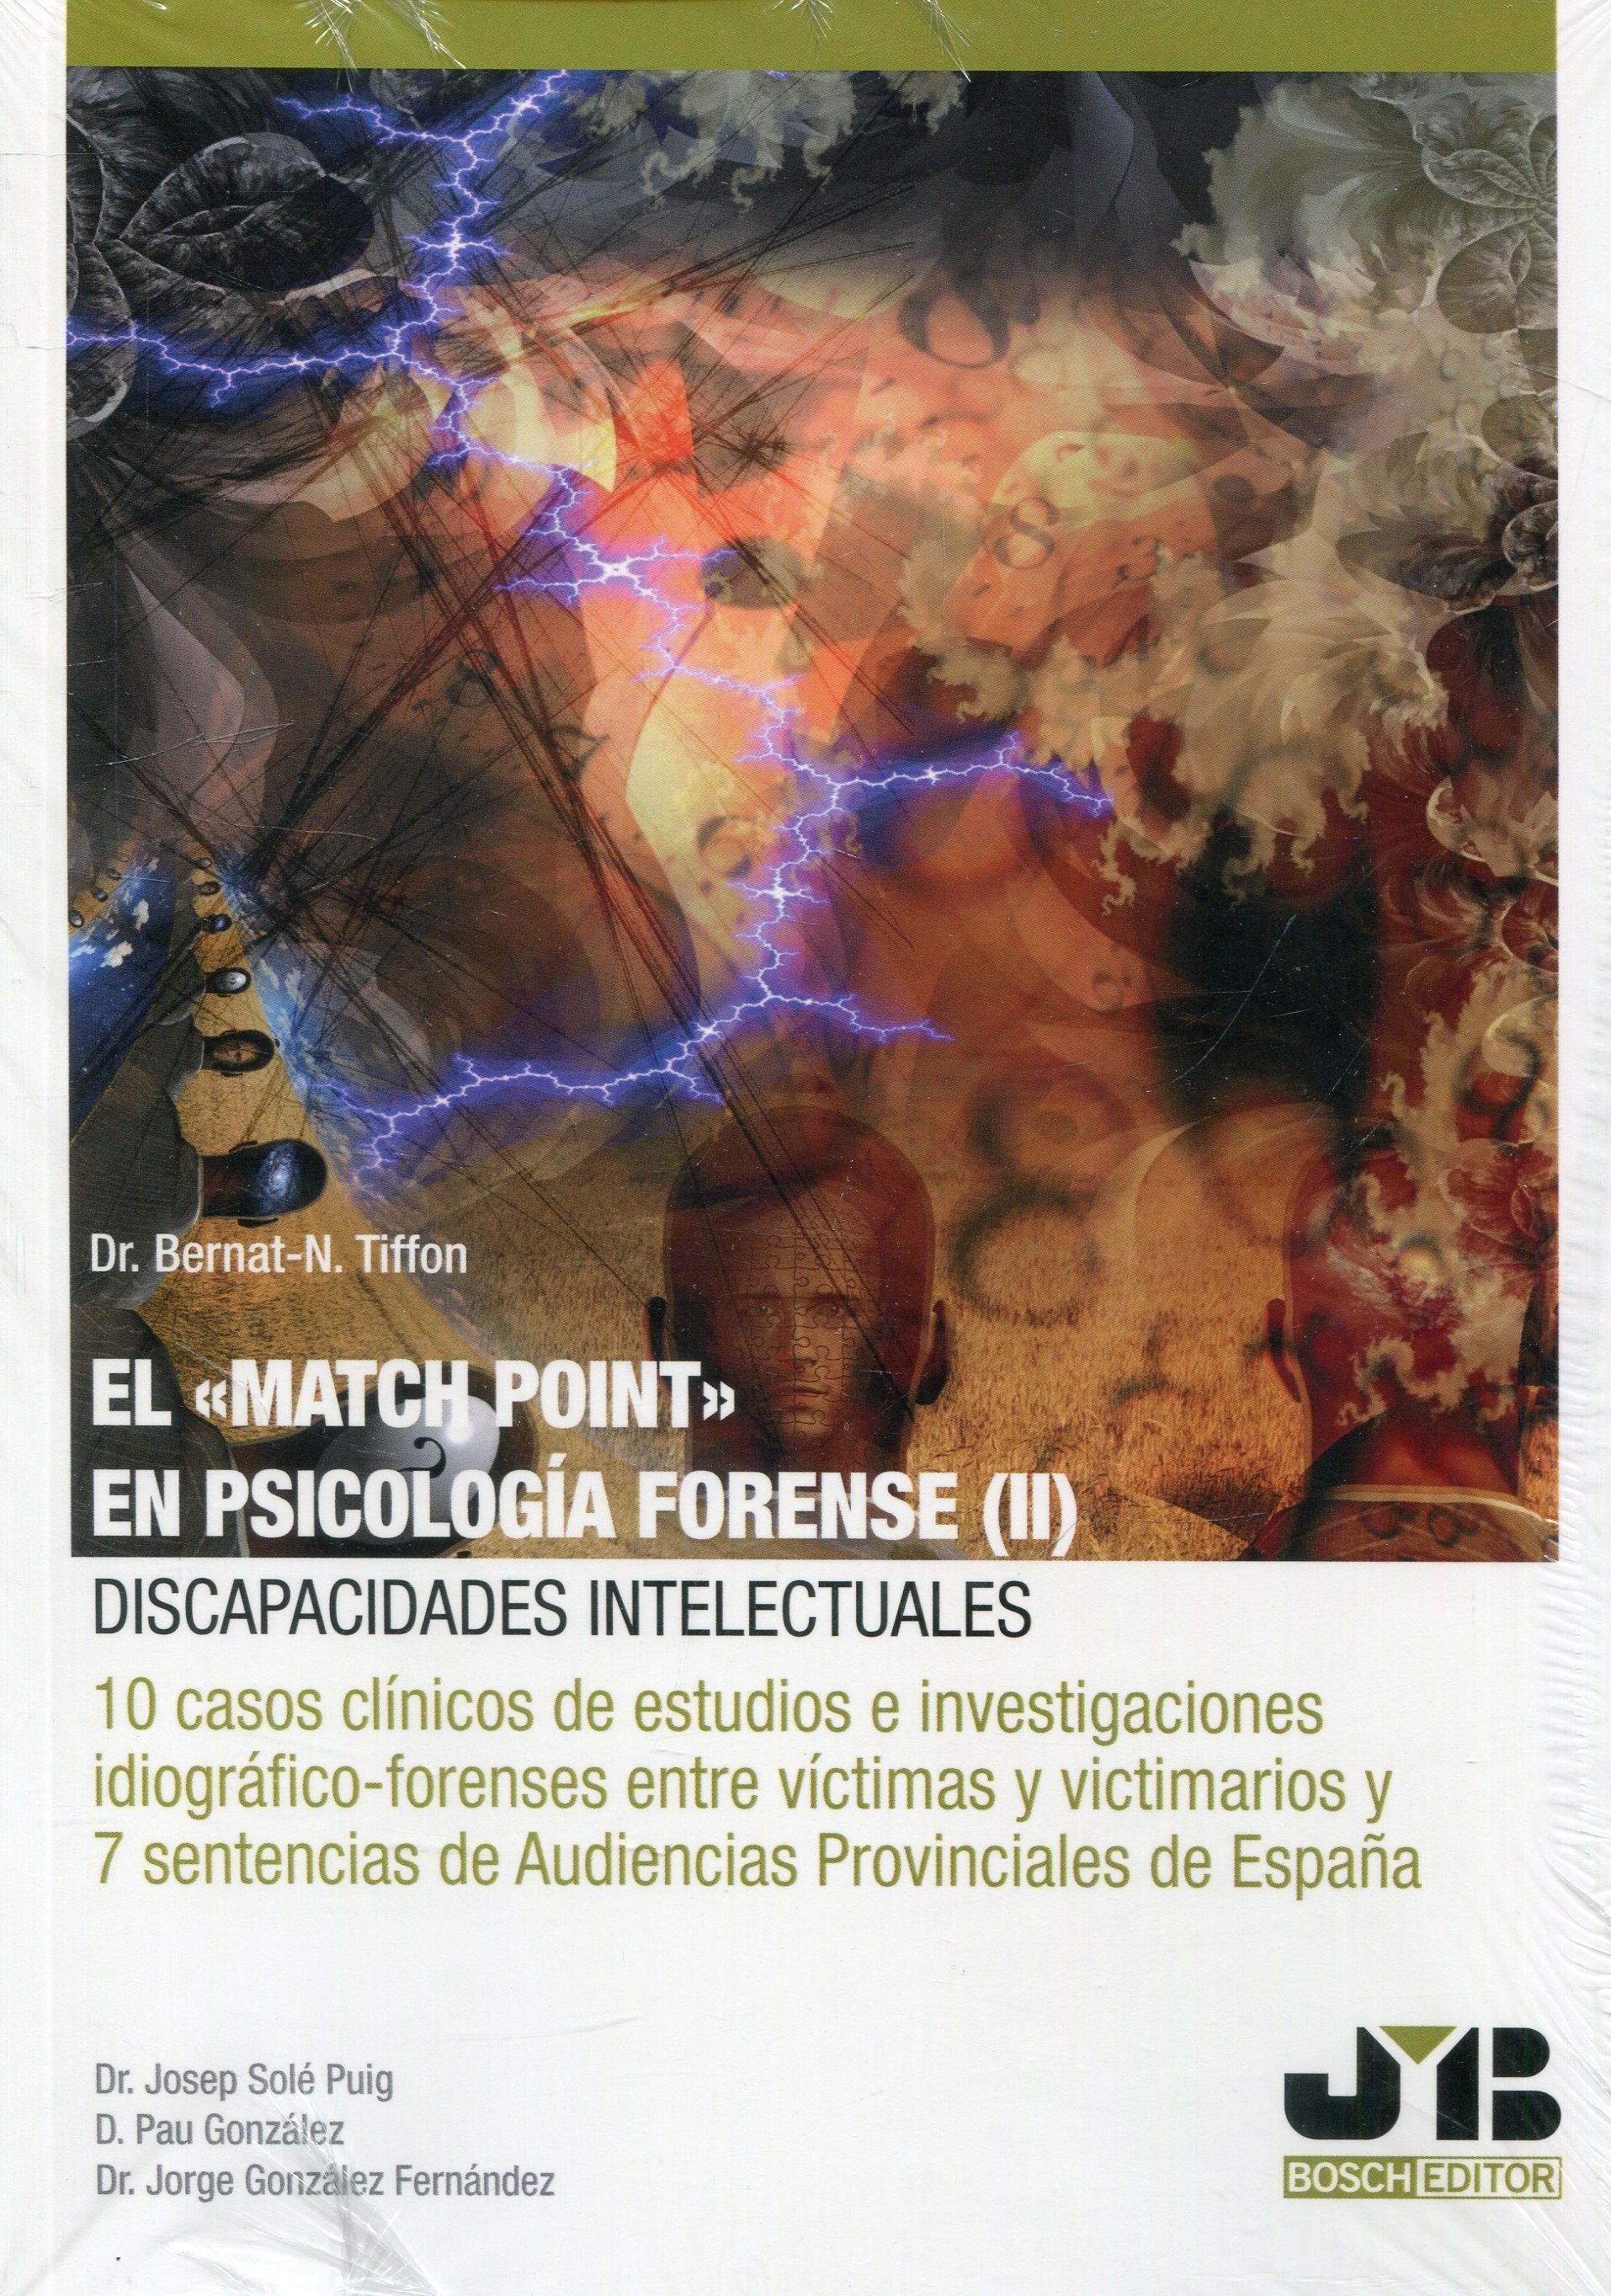 El "Match Point" en psicología forense (II): discapacidades intelectuales "10 casos clínicos de estudios e investigaciones ideográfico-forenses entre víctimas y victimarios y 7 sentencias de Audiencias Provinciales de España"